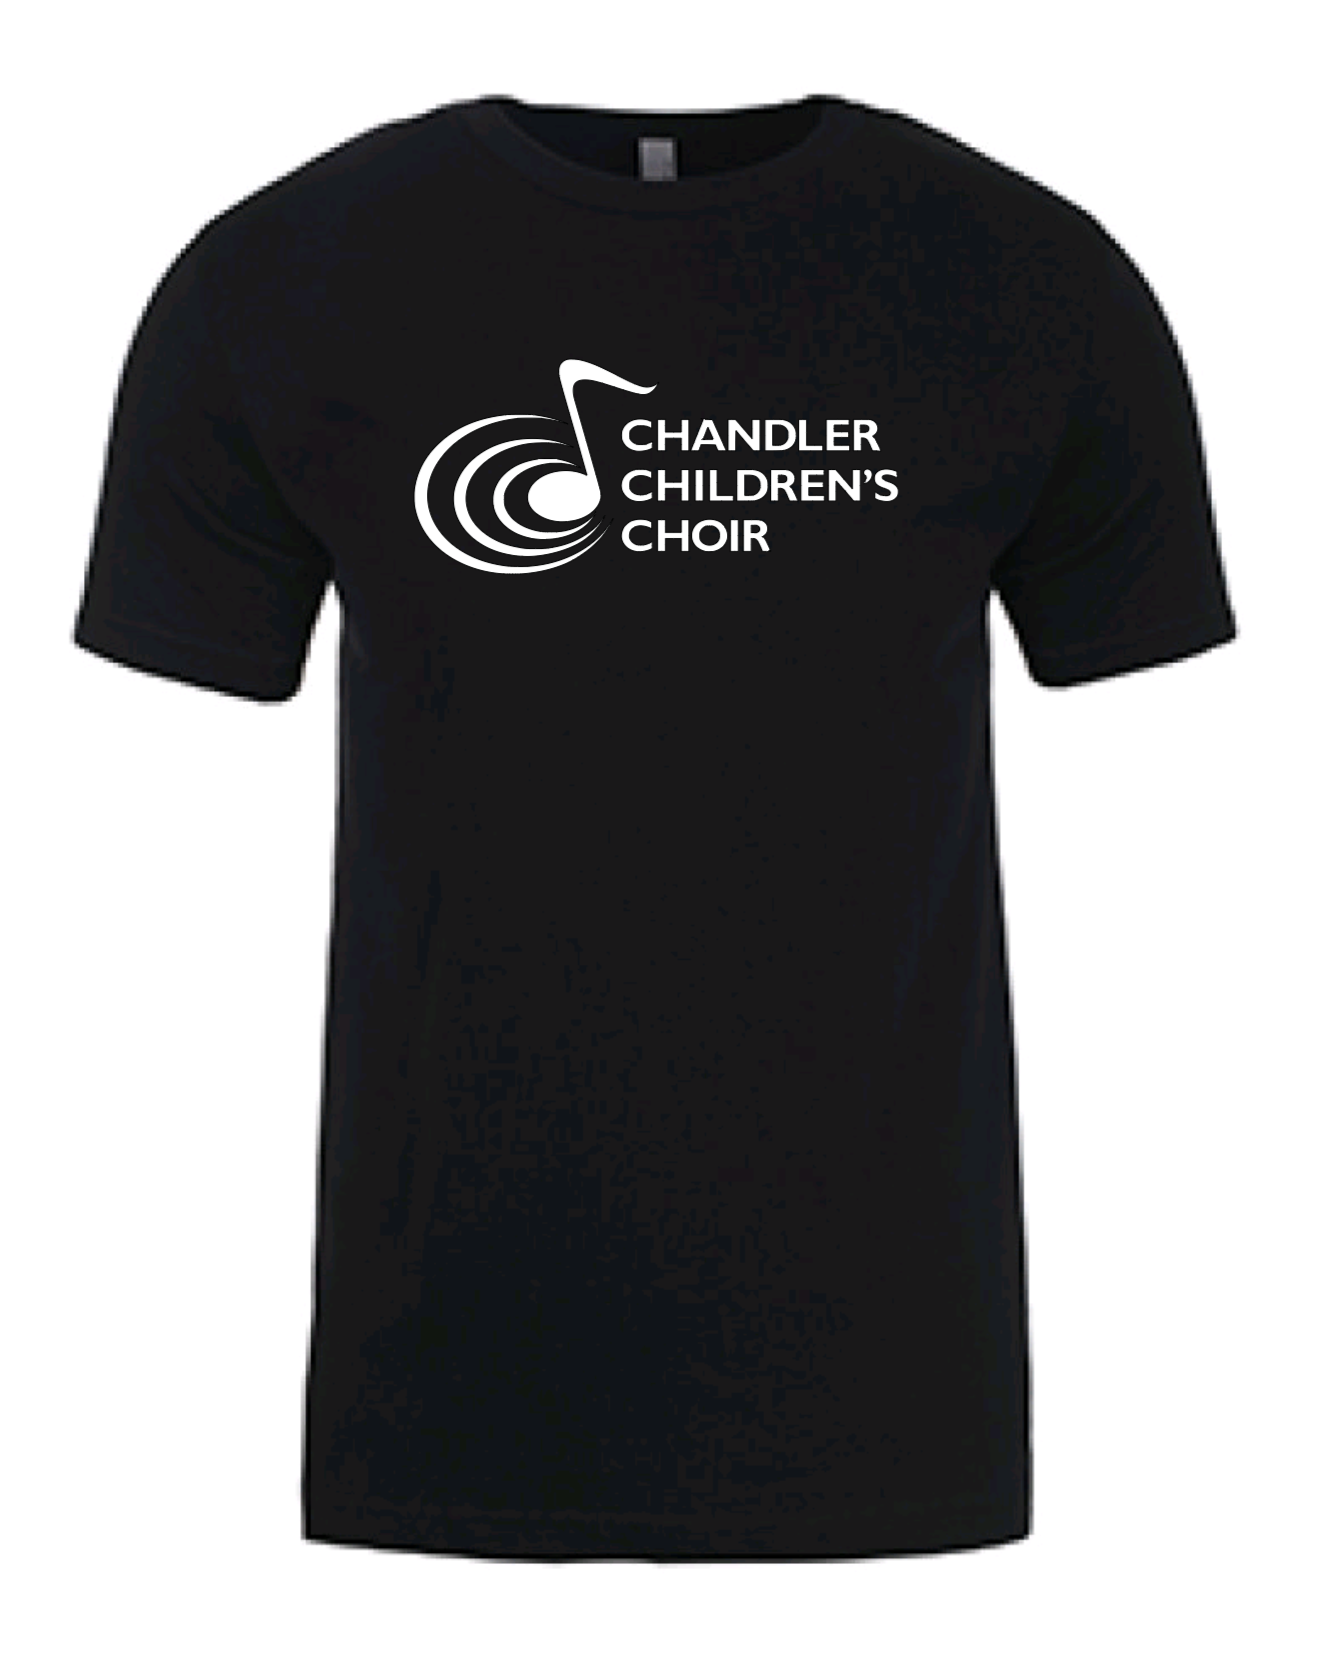 Chandler Children's Choir Adult T-Shirt